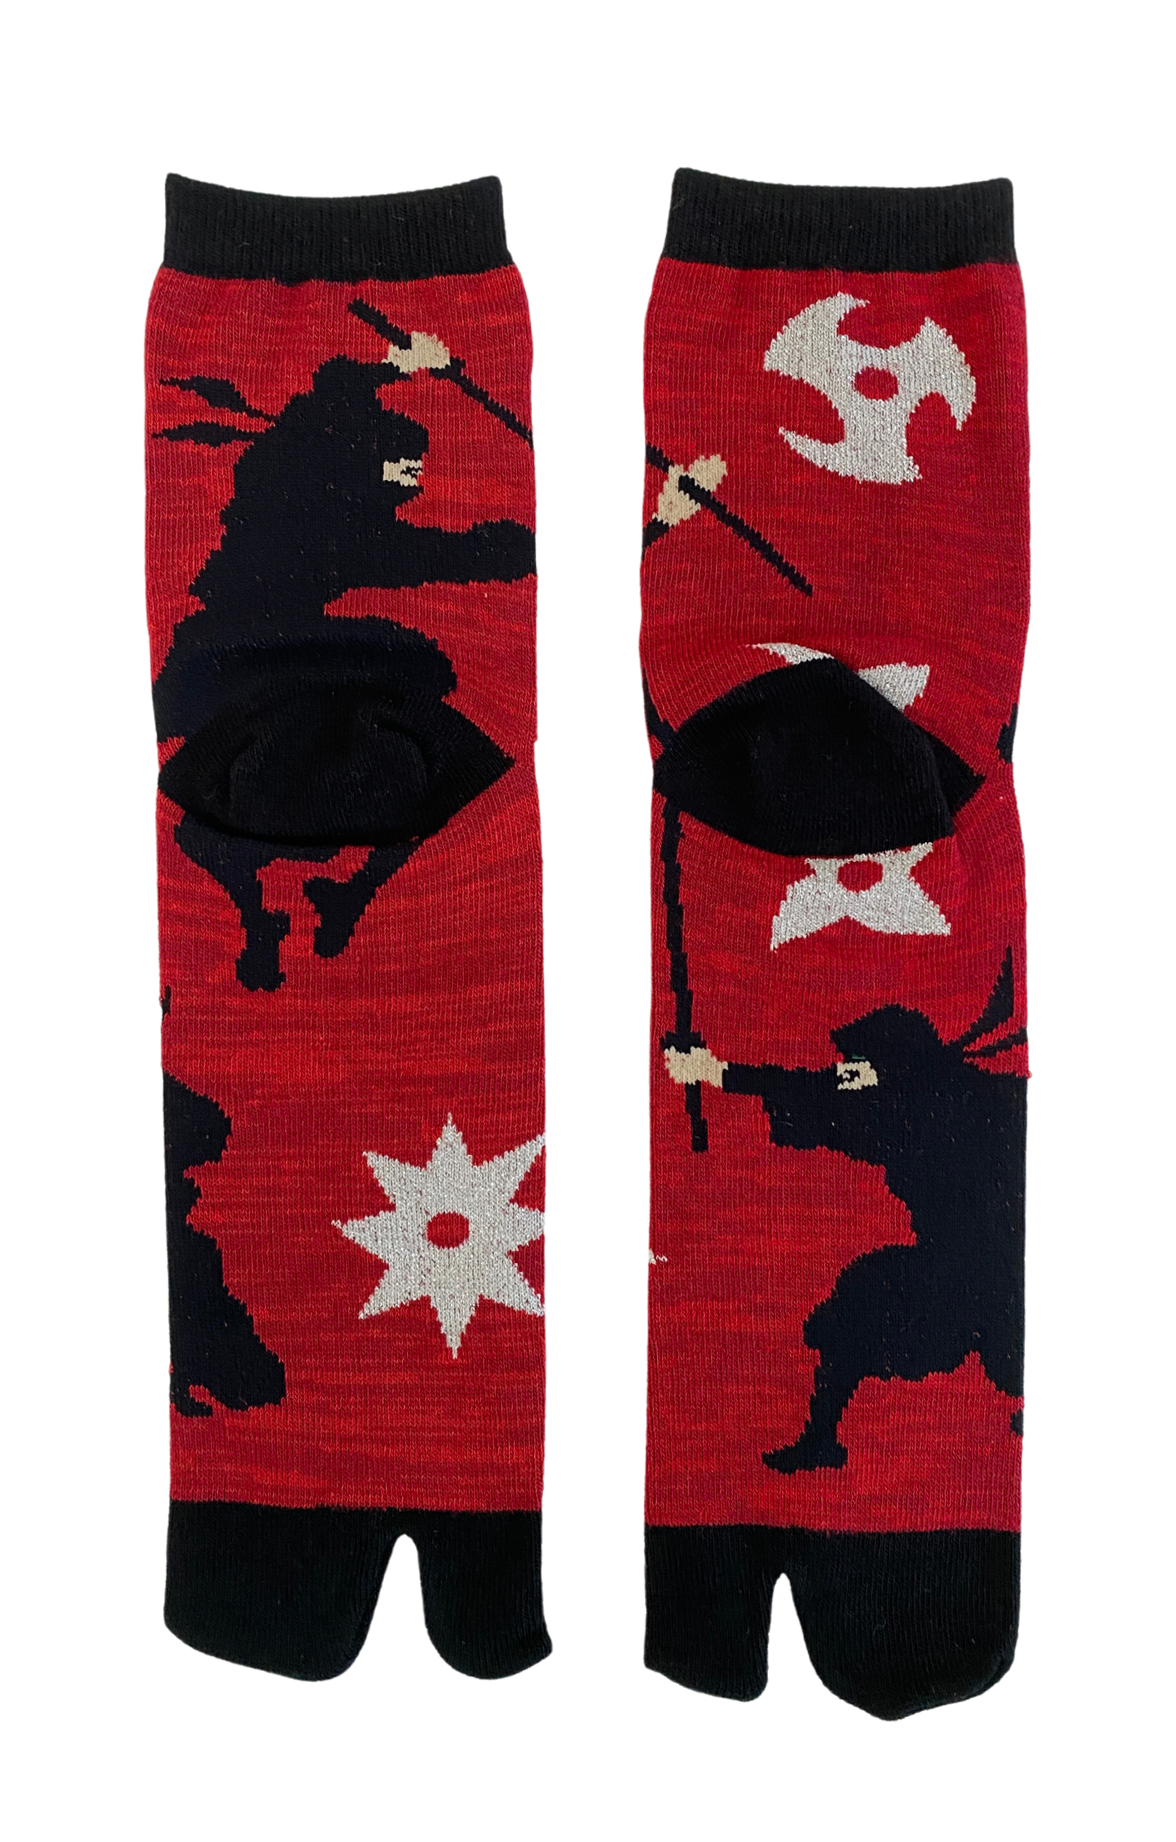 5390 ninja tabi socks red made in japan